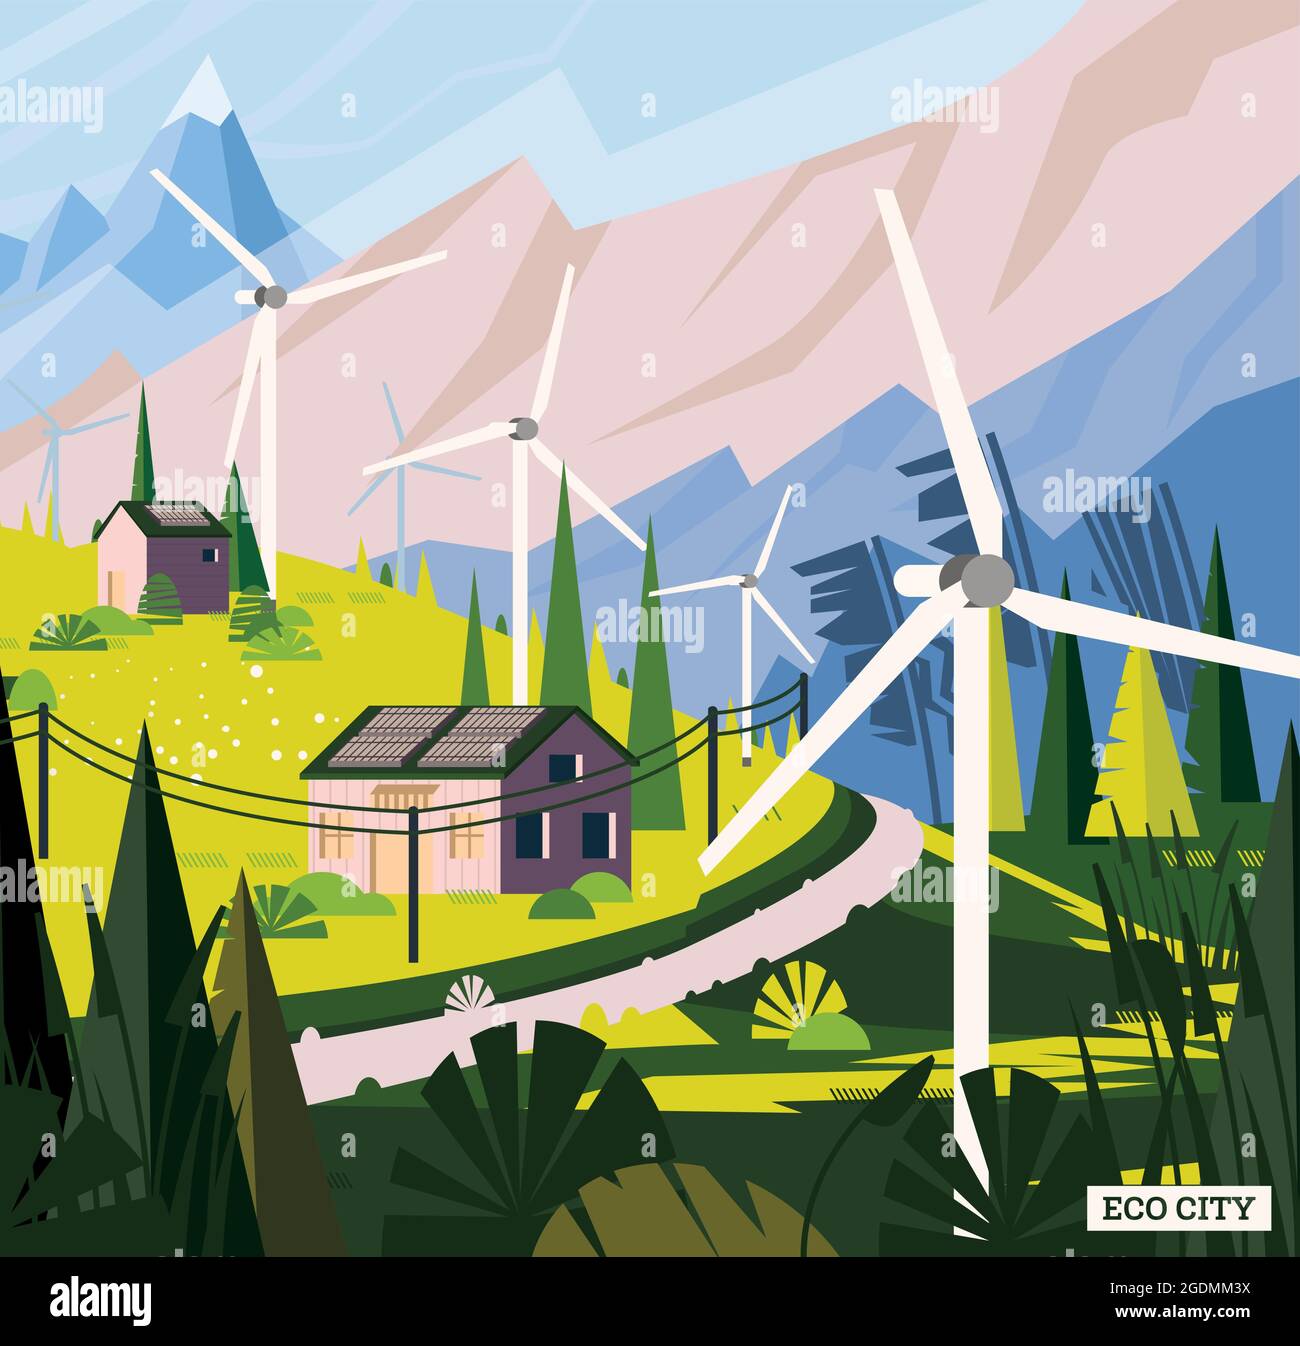 Paesaggio con strada nelle Alpi. Concetto di energia verde rinnovabile con turbine eoliche in Villaggio e pannelli solari sui tetti. Illustrazione vettoriale. Illustrazione Vettoriale